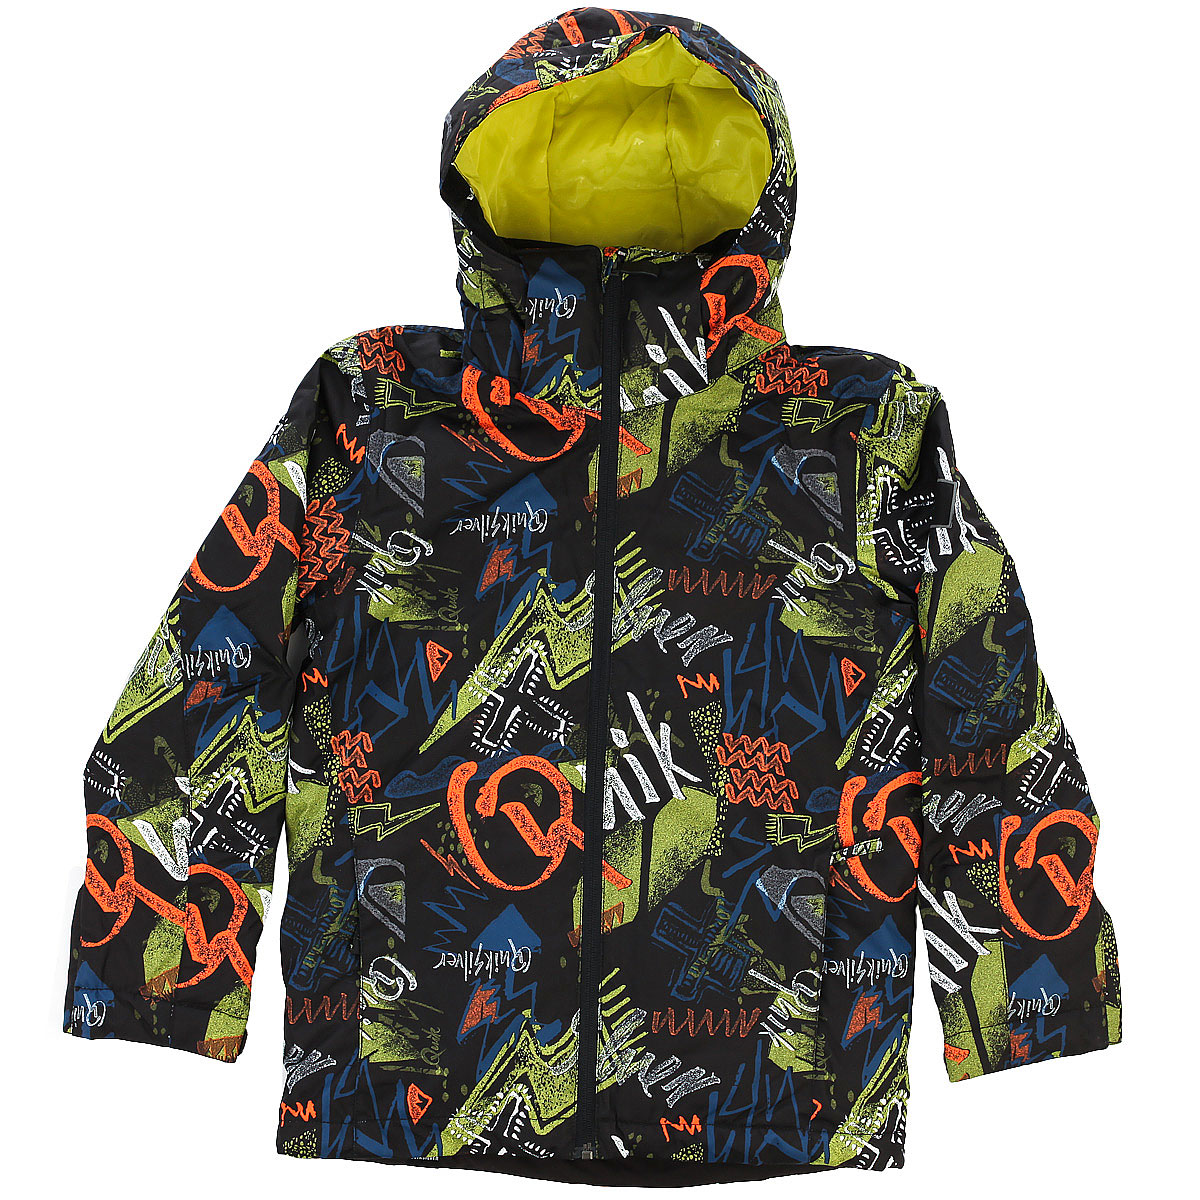 Куртка для мальчика quiksilver. Quicksilver куртки детские. Детская куртка Квиксильвер. Куртка Quiksilver Arris. Куртка Multicolor для детей.